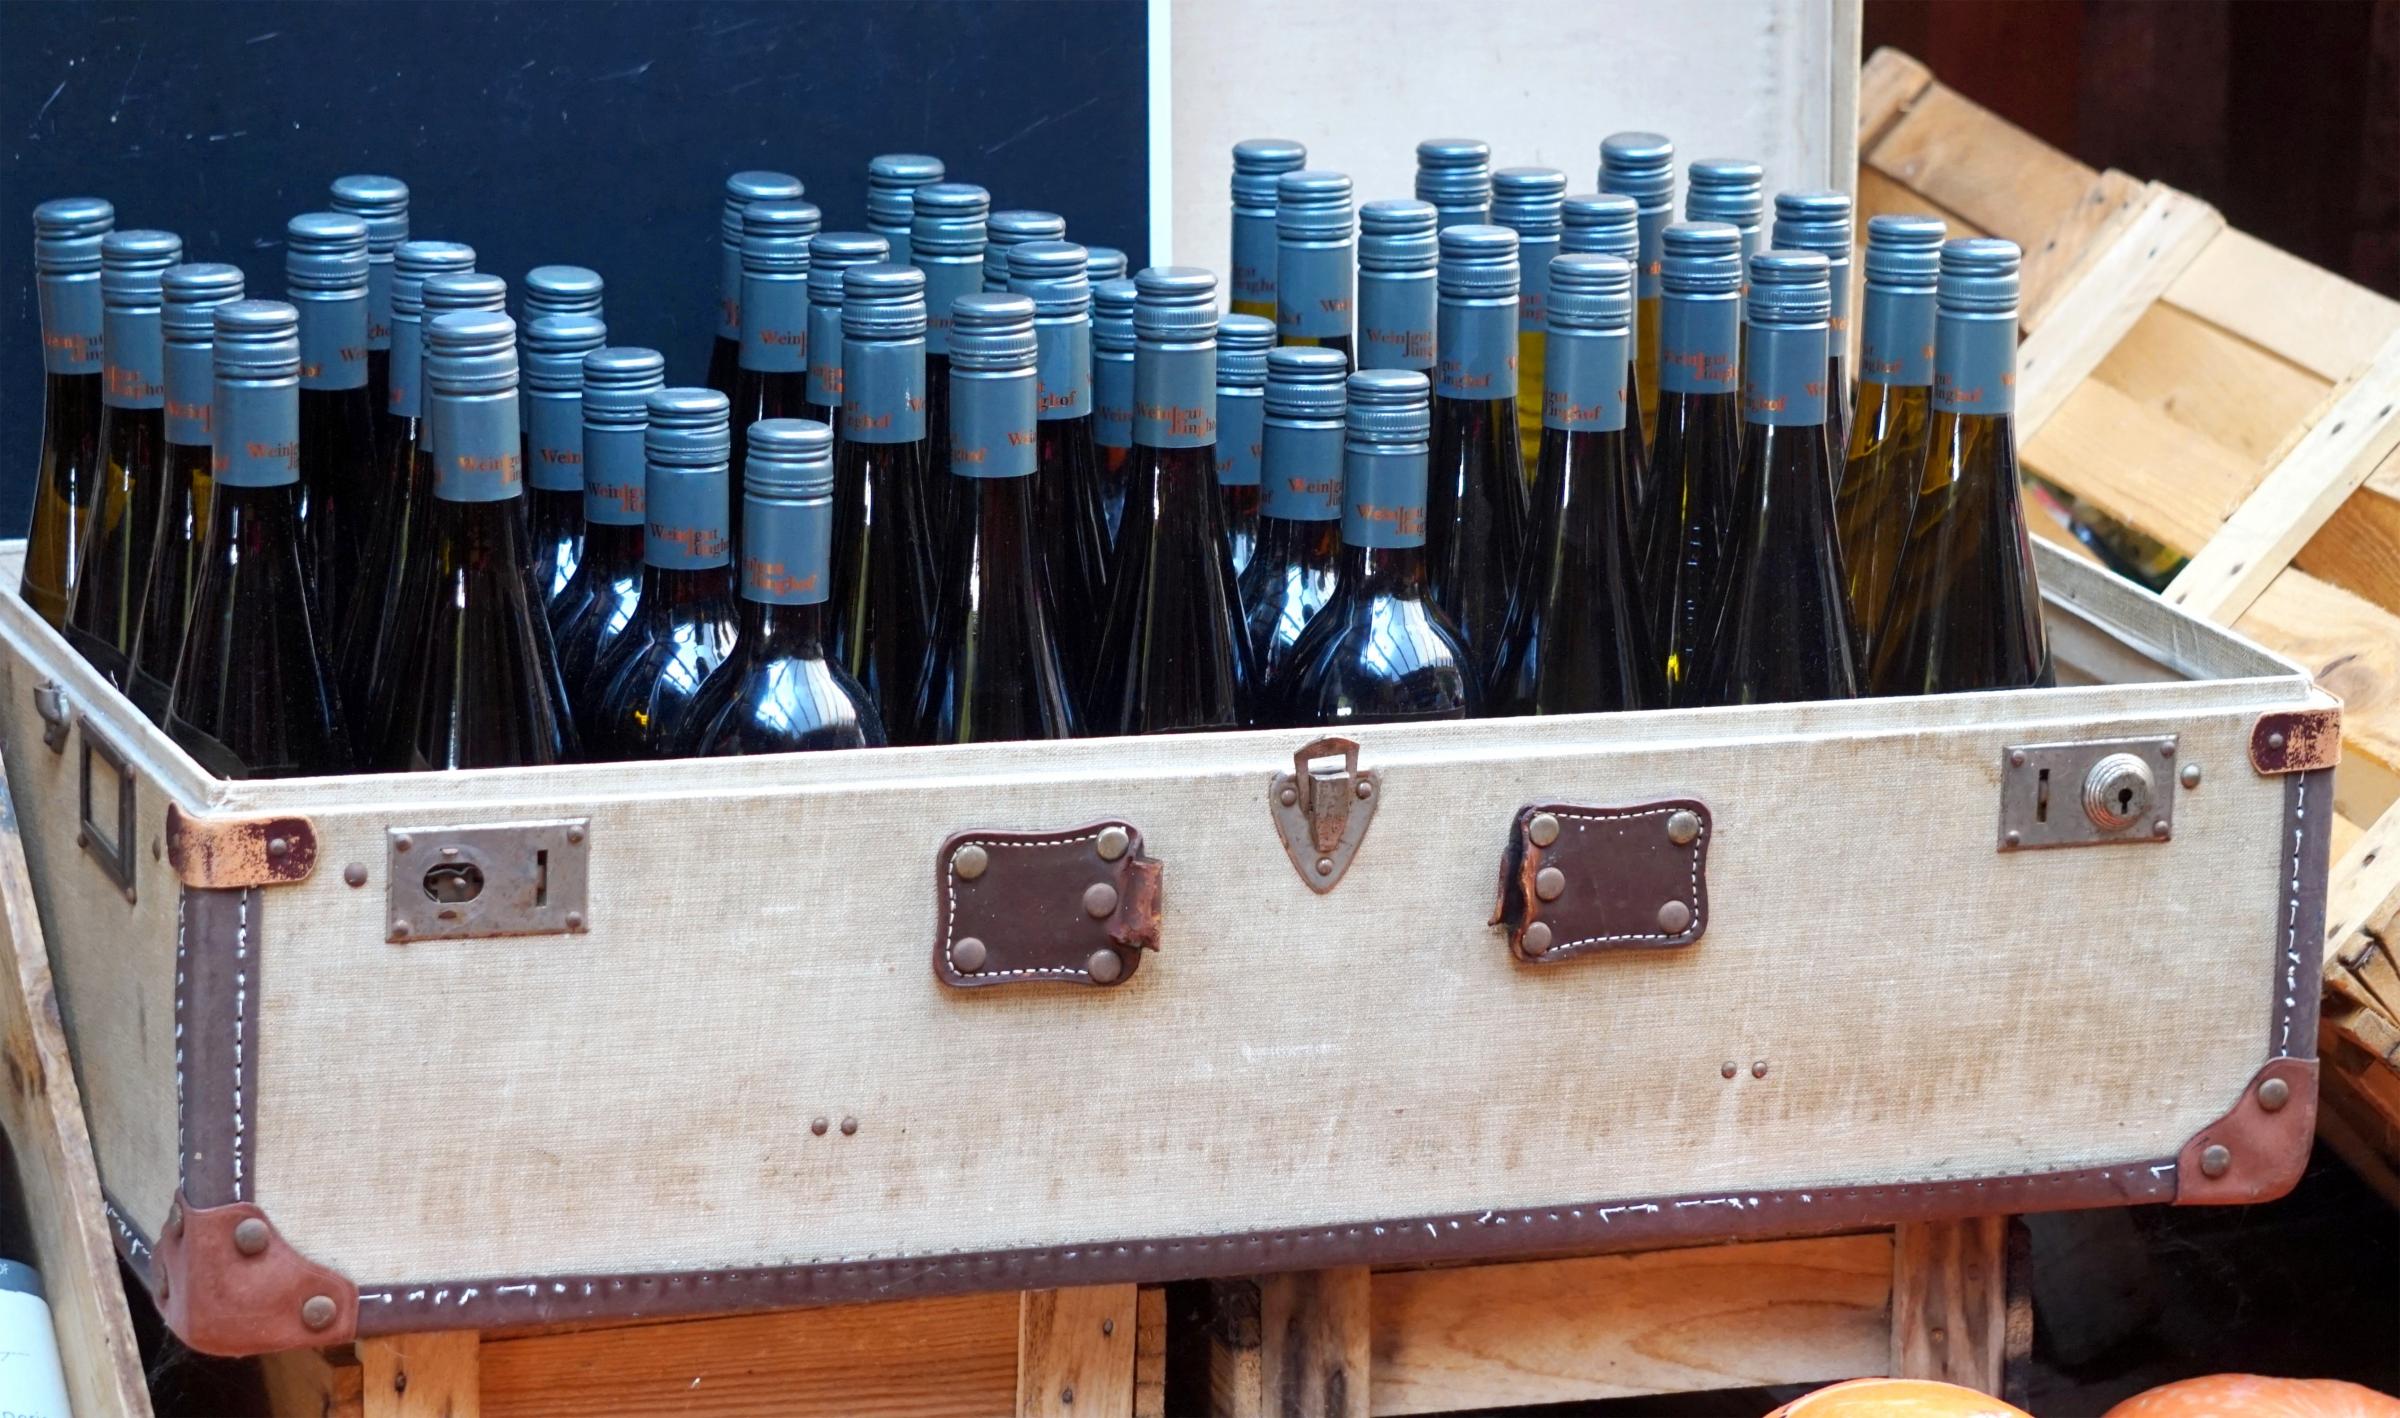 A suitcase full of wine. Photo: Pixabay